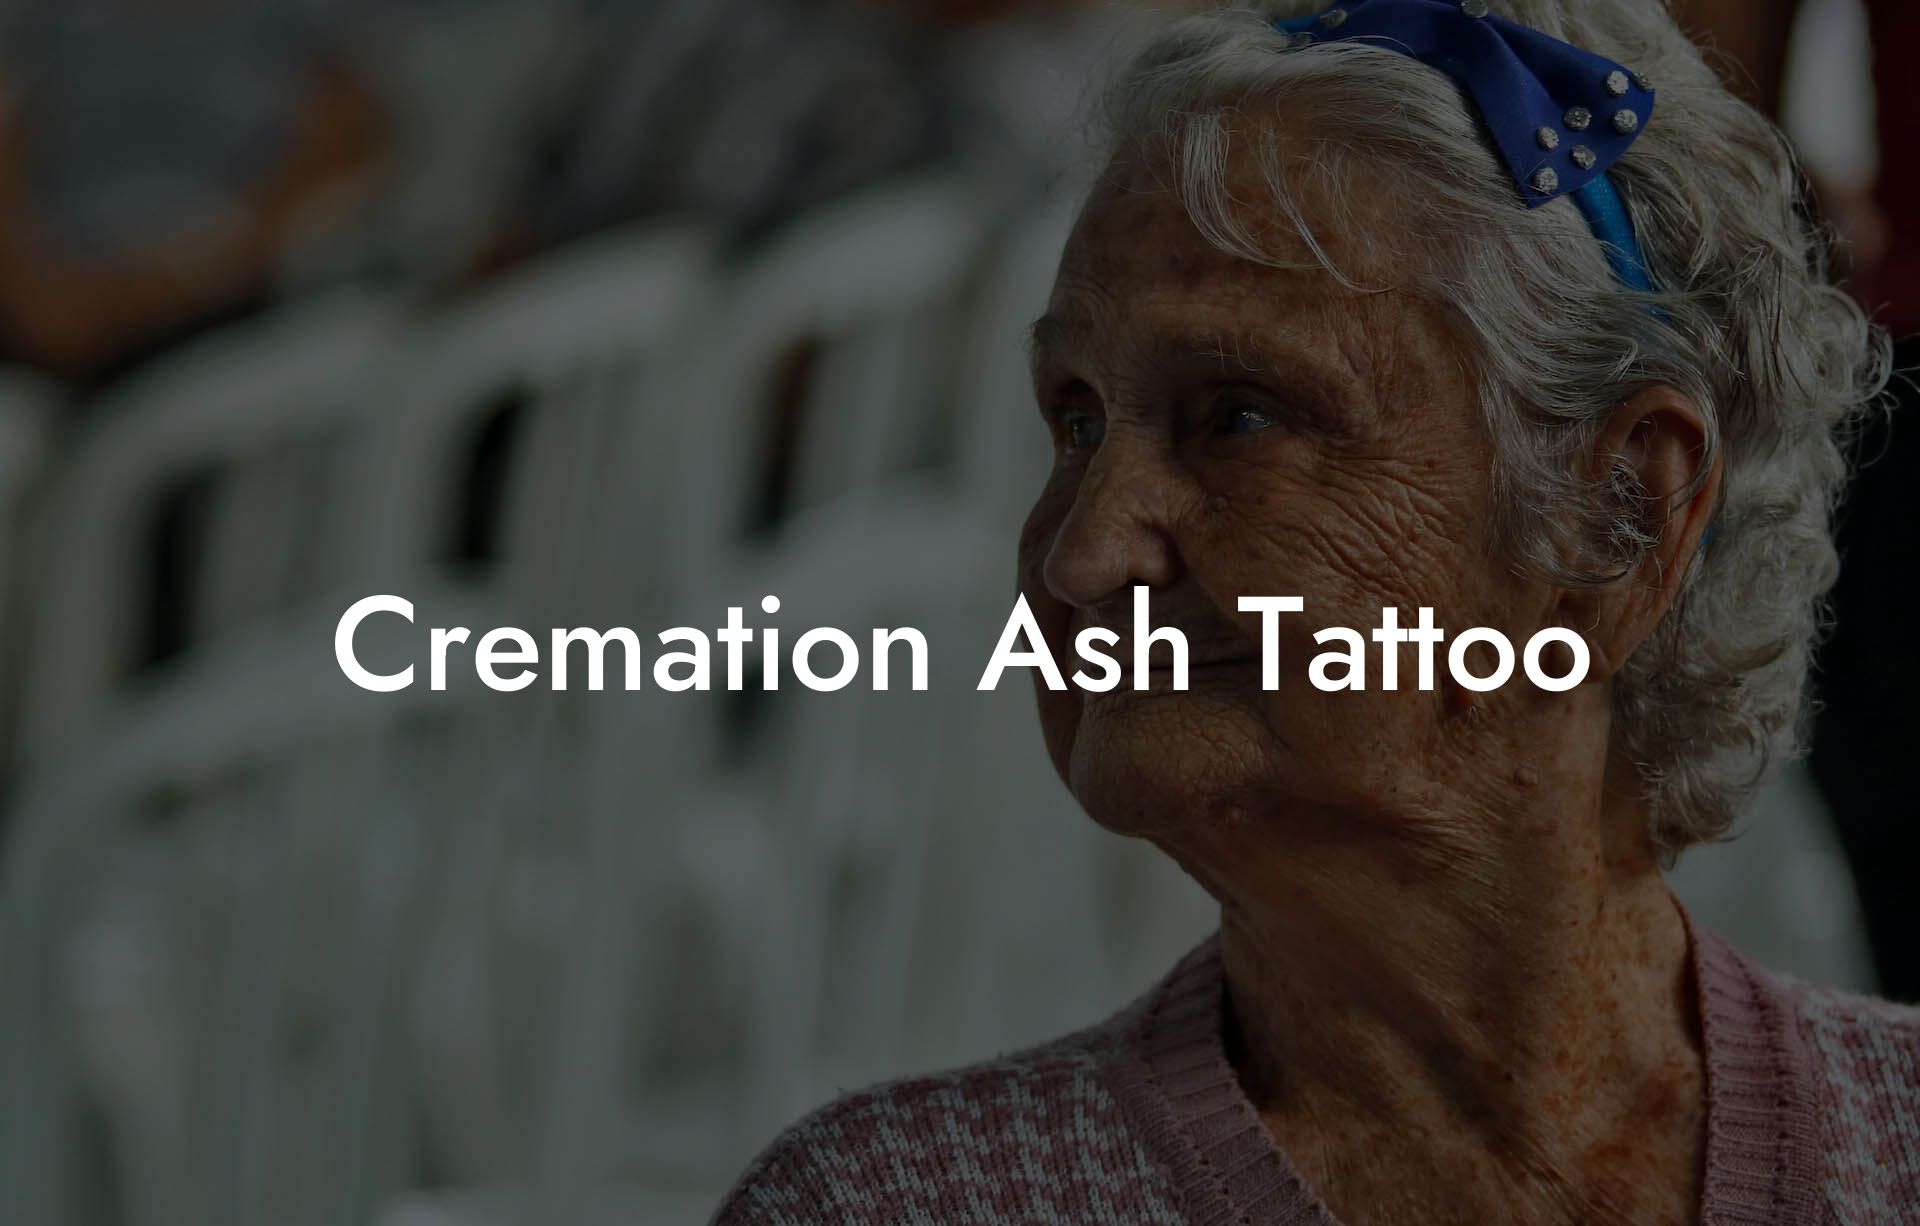 Cremation Ash Tattoo